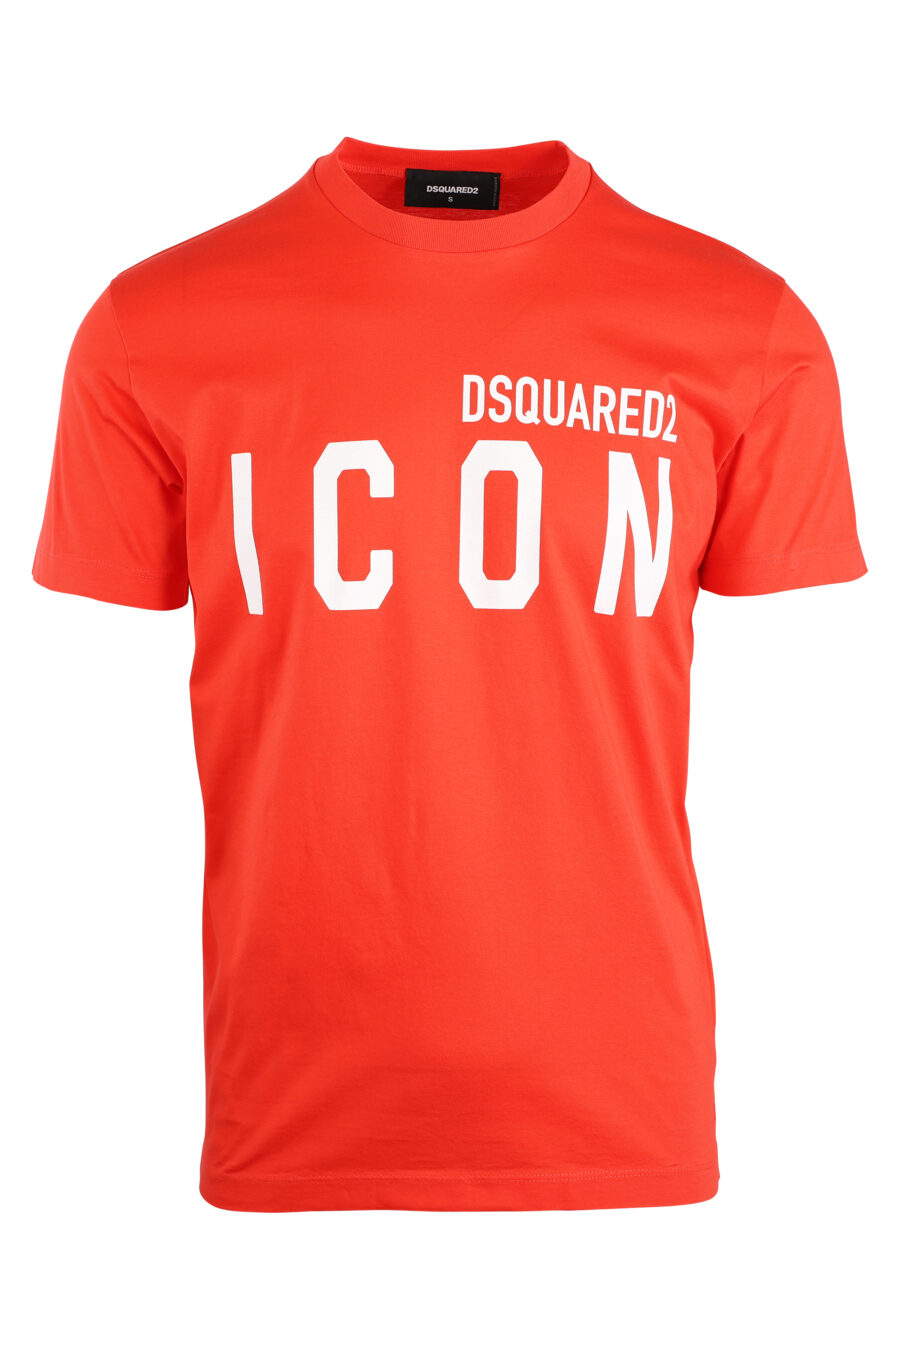 T-shirt orange avec double logo "icon" - IMG 8927